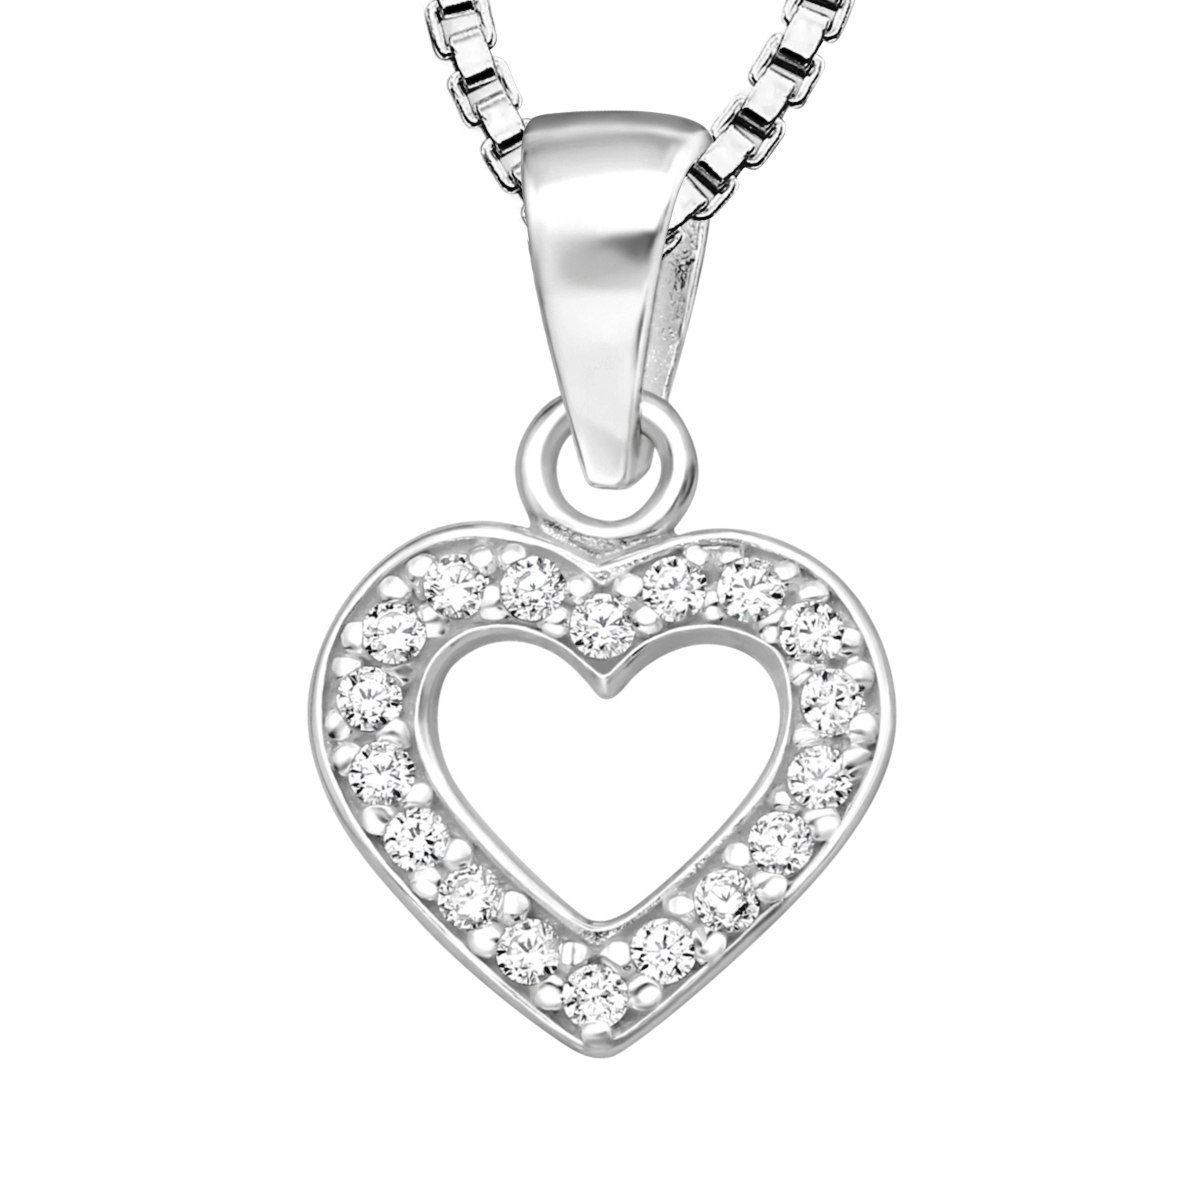 Barnhalsband Hjärta med vita stenar - sött halsband till barn i äkta 925 sterling silver